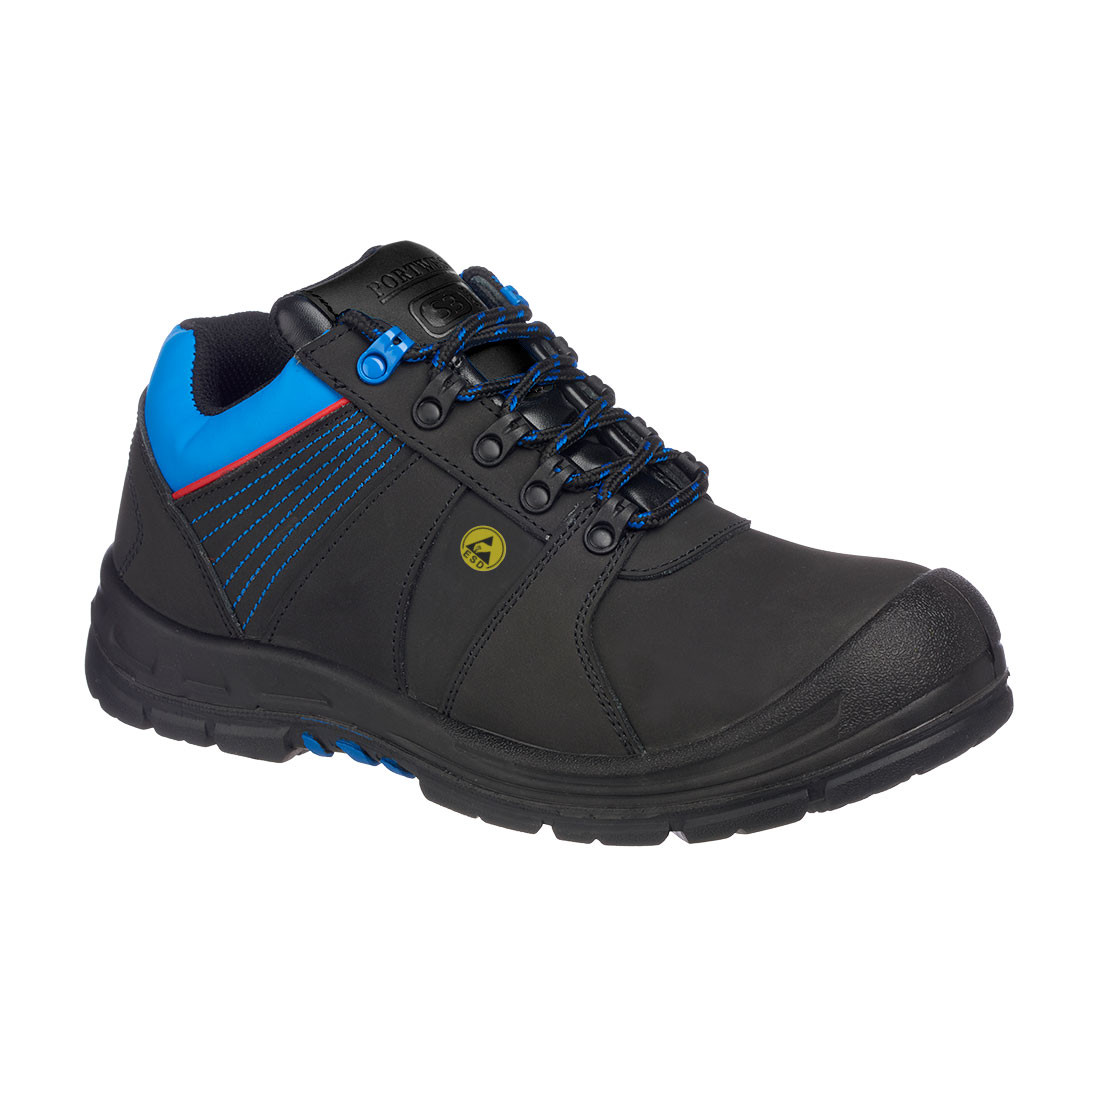 Pantof de protecție Portwest Compositelite S3 ESD HRO - Incaltaminte de protectie | Bocanci, Pantofi, Sandale, Cizme